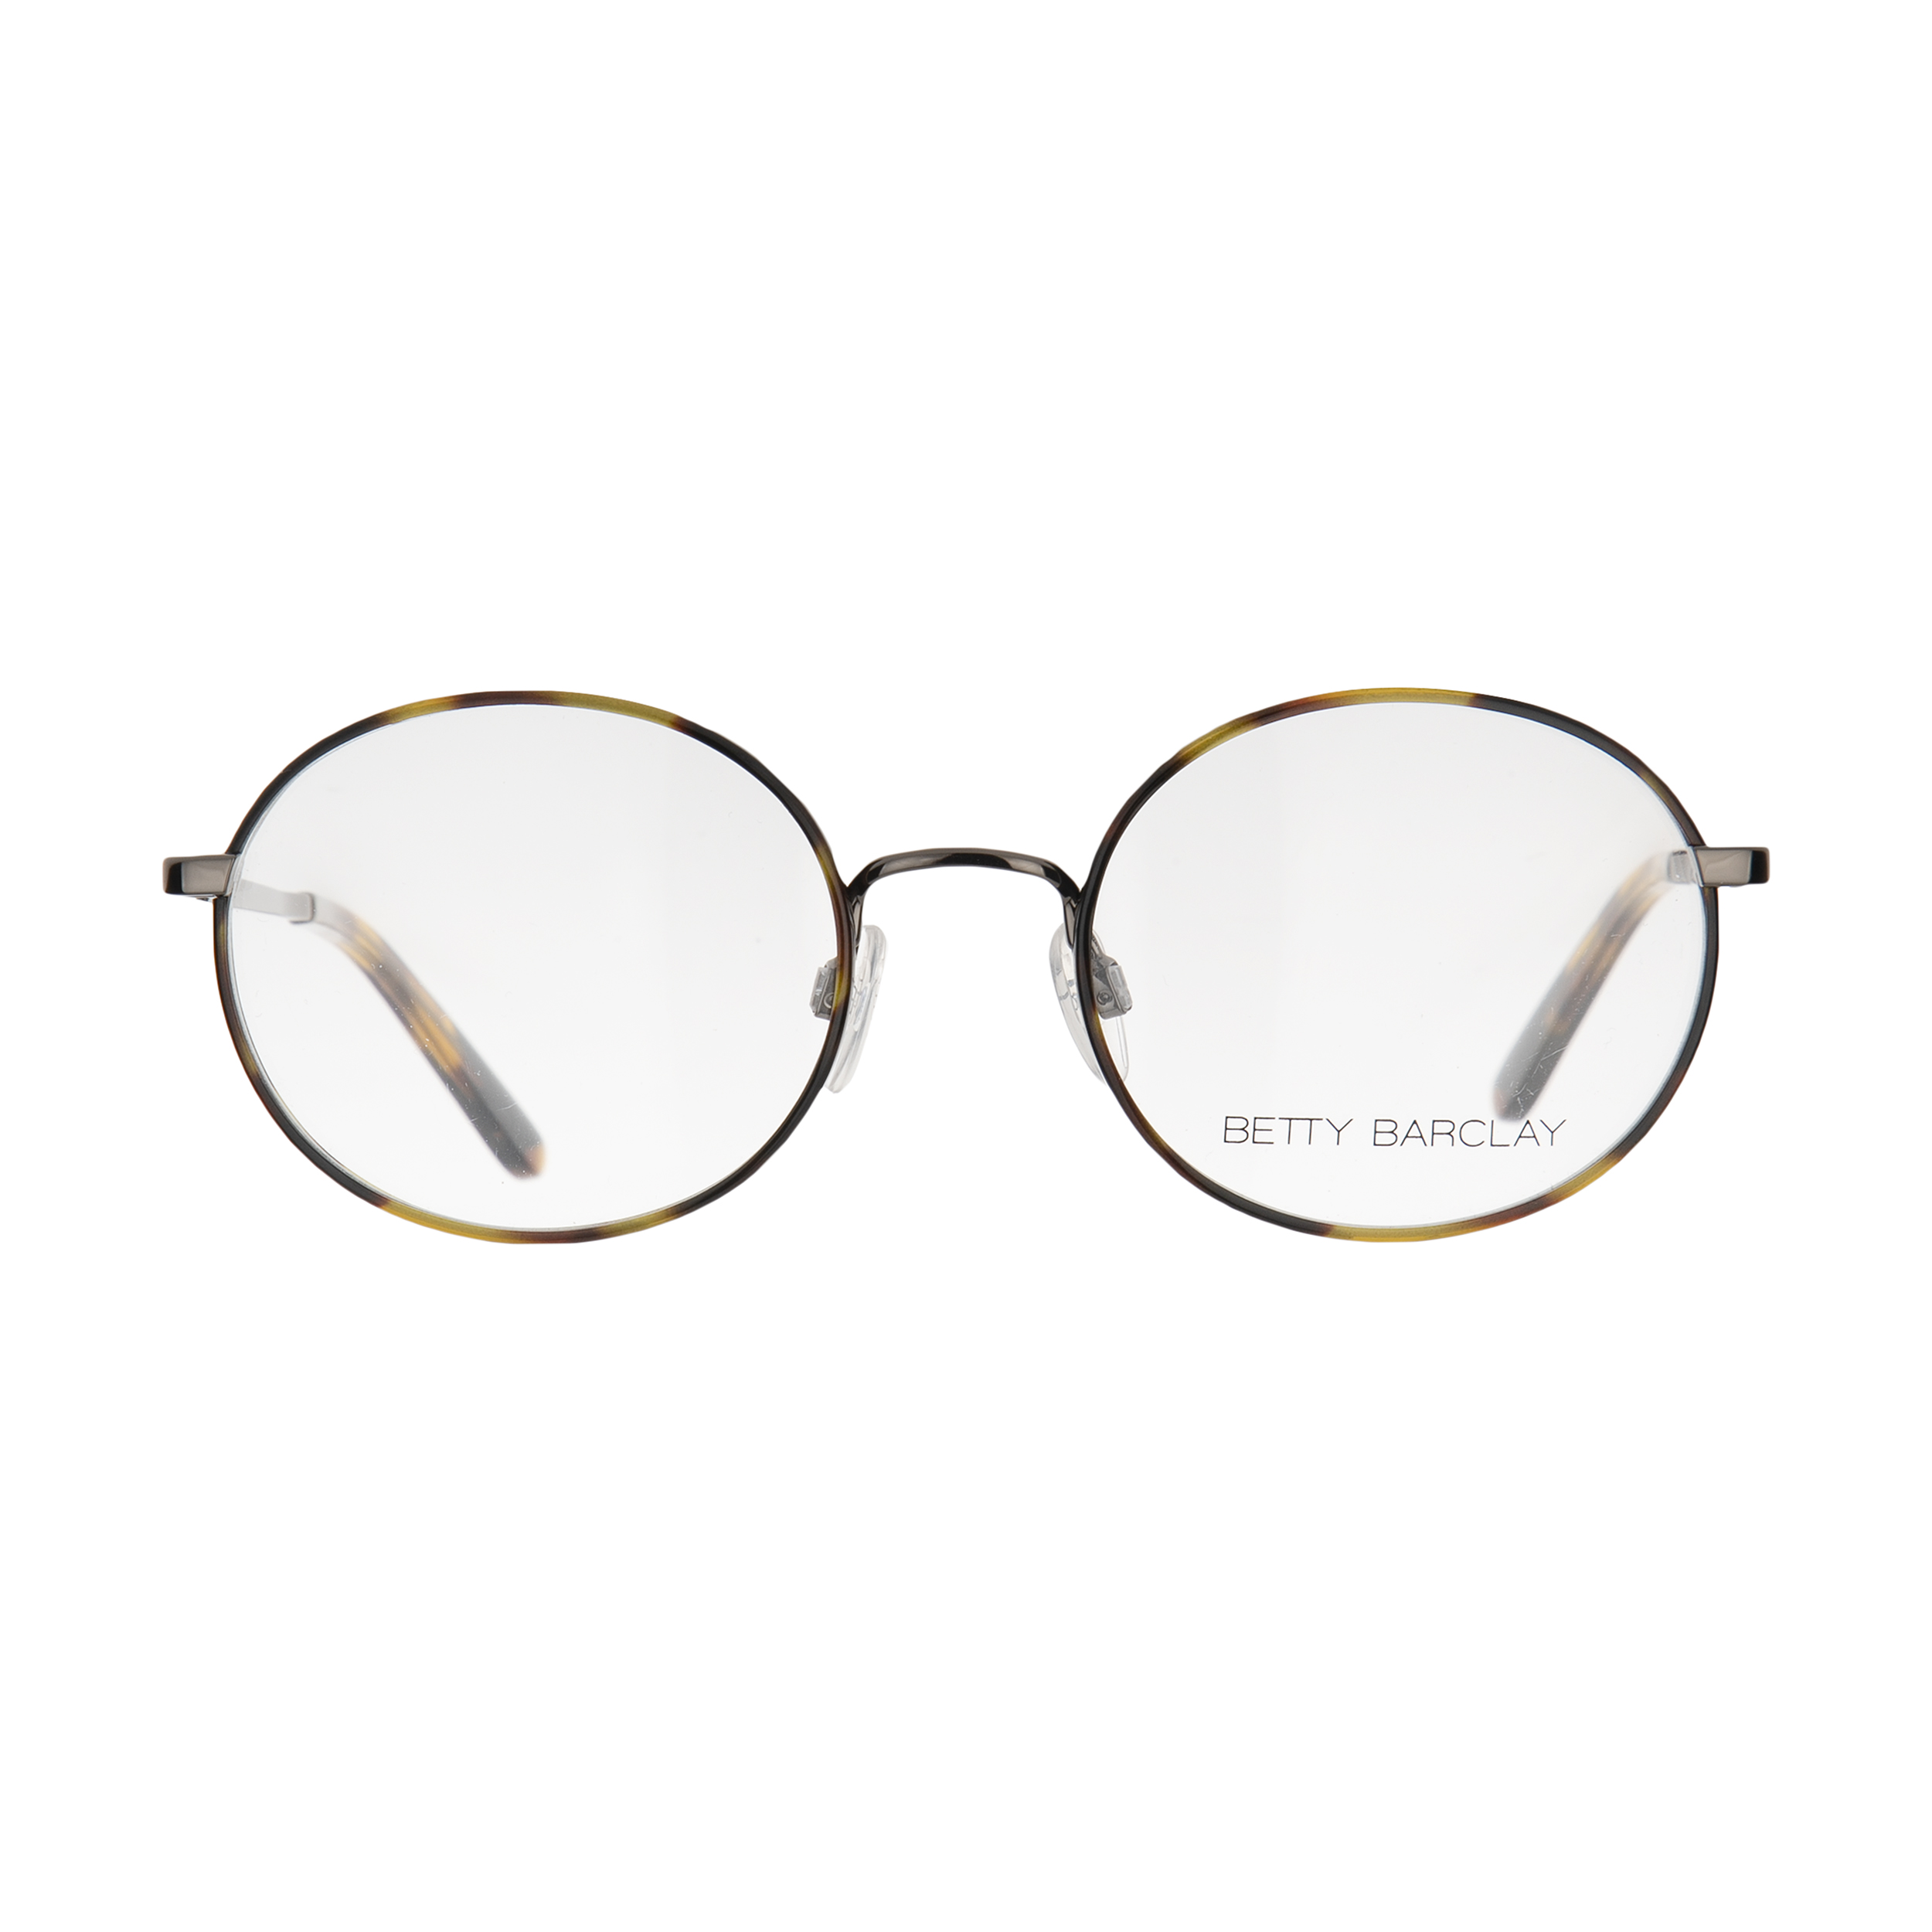 فریم عینک طبی زنانه بتی بارکلی مدل 51168-662